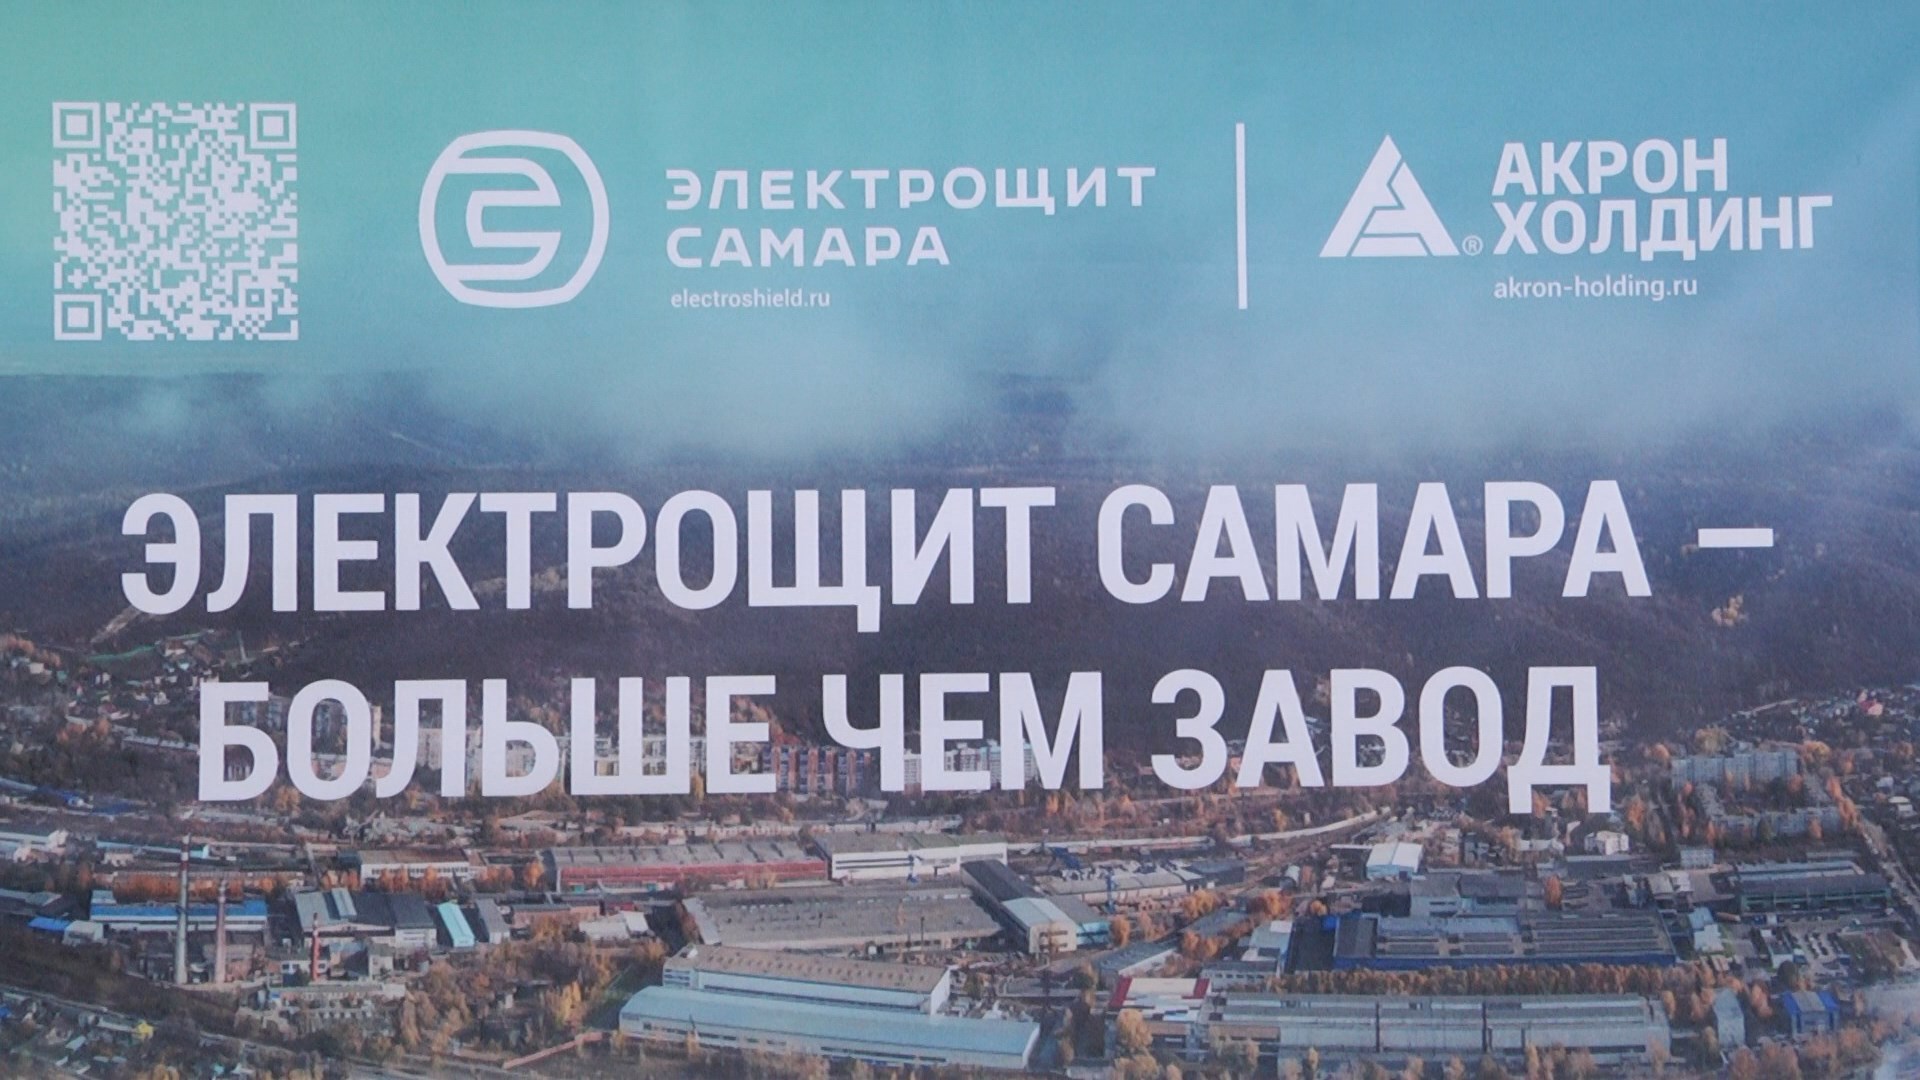 В Волгоградском техническом университете прошел «День Электрощит Самара»